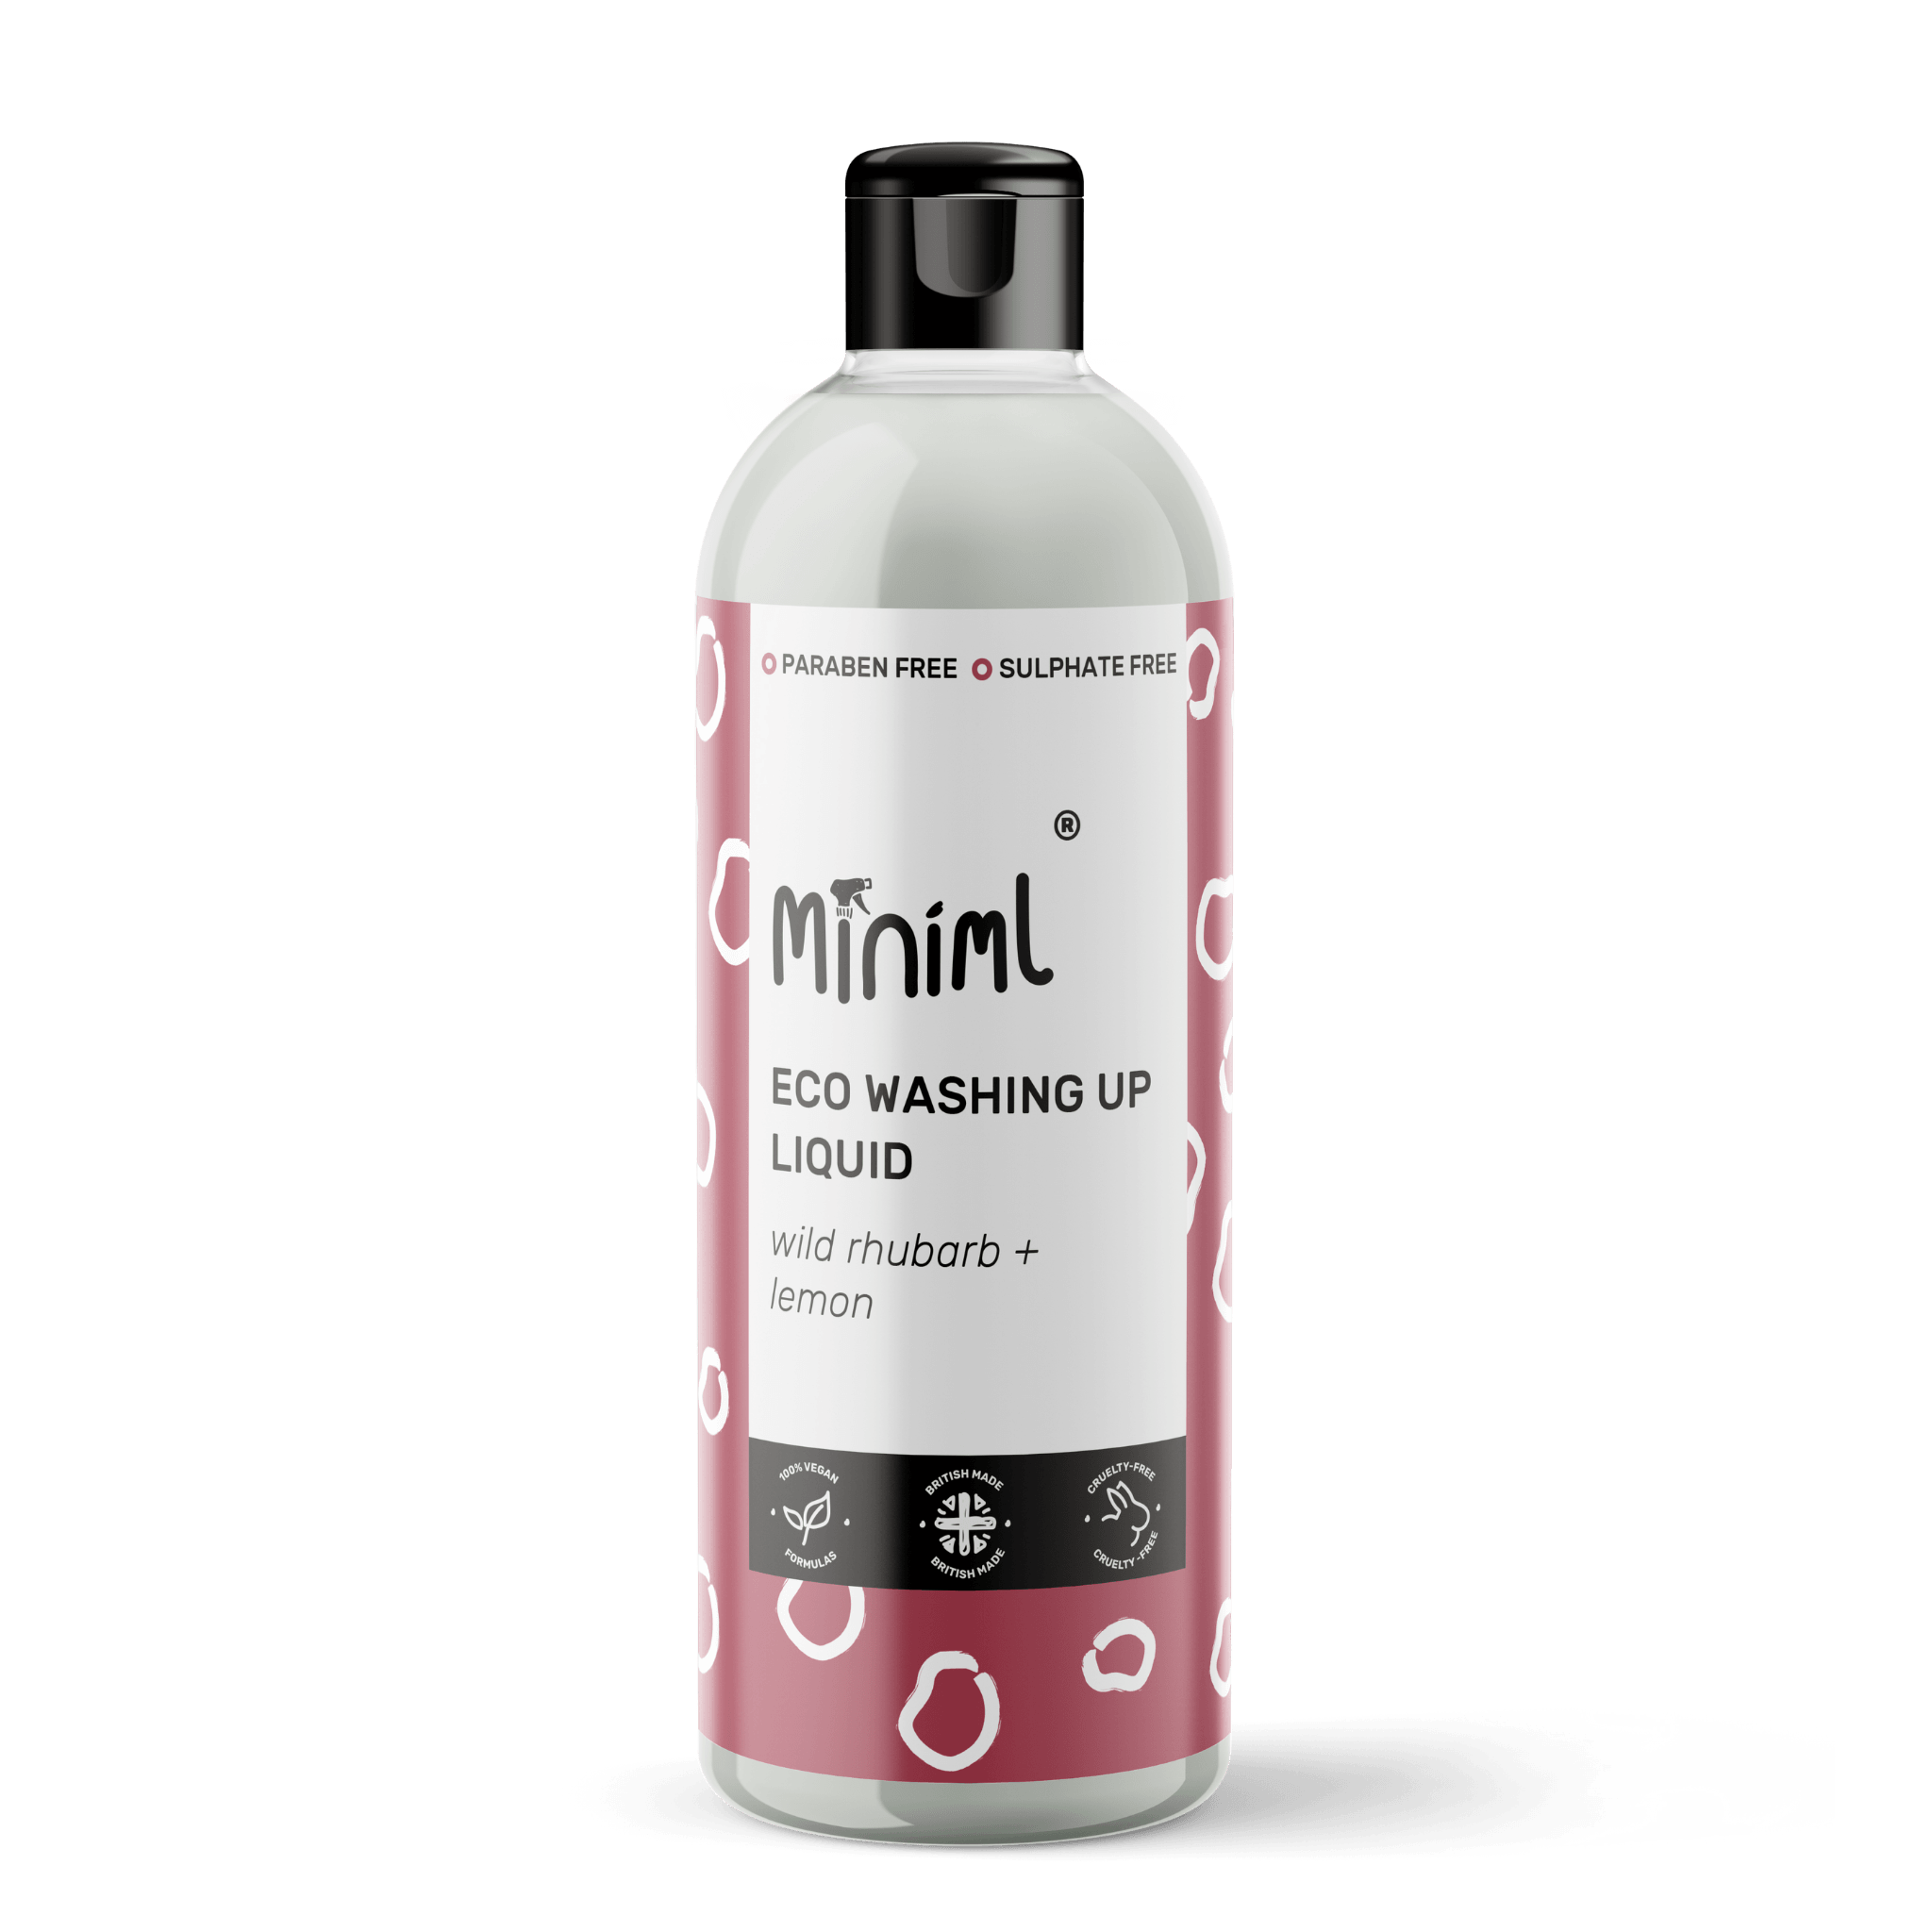 Miniml - Eco Friendly- Washing Up Liquid - Rhubarb + Lemon - 500ml - Vending Superstore